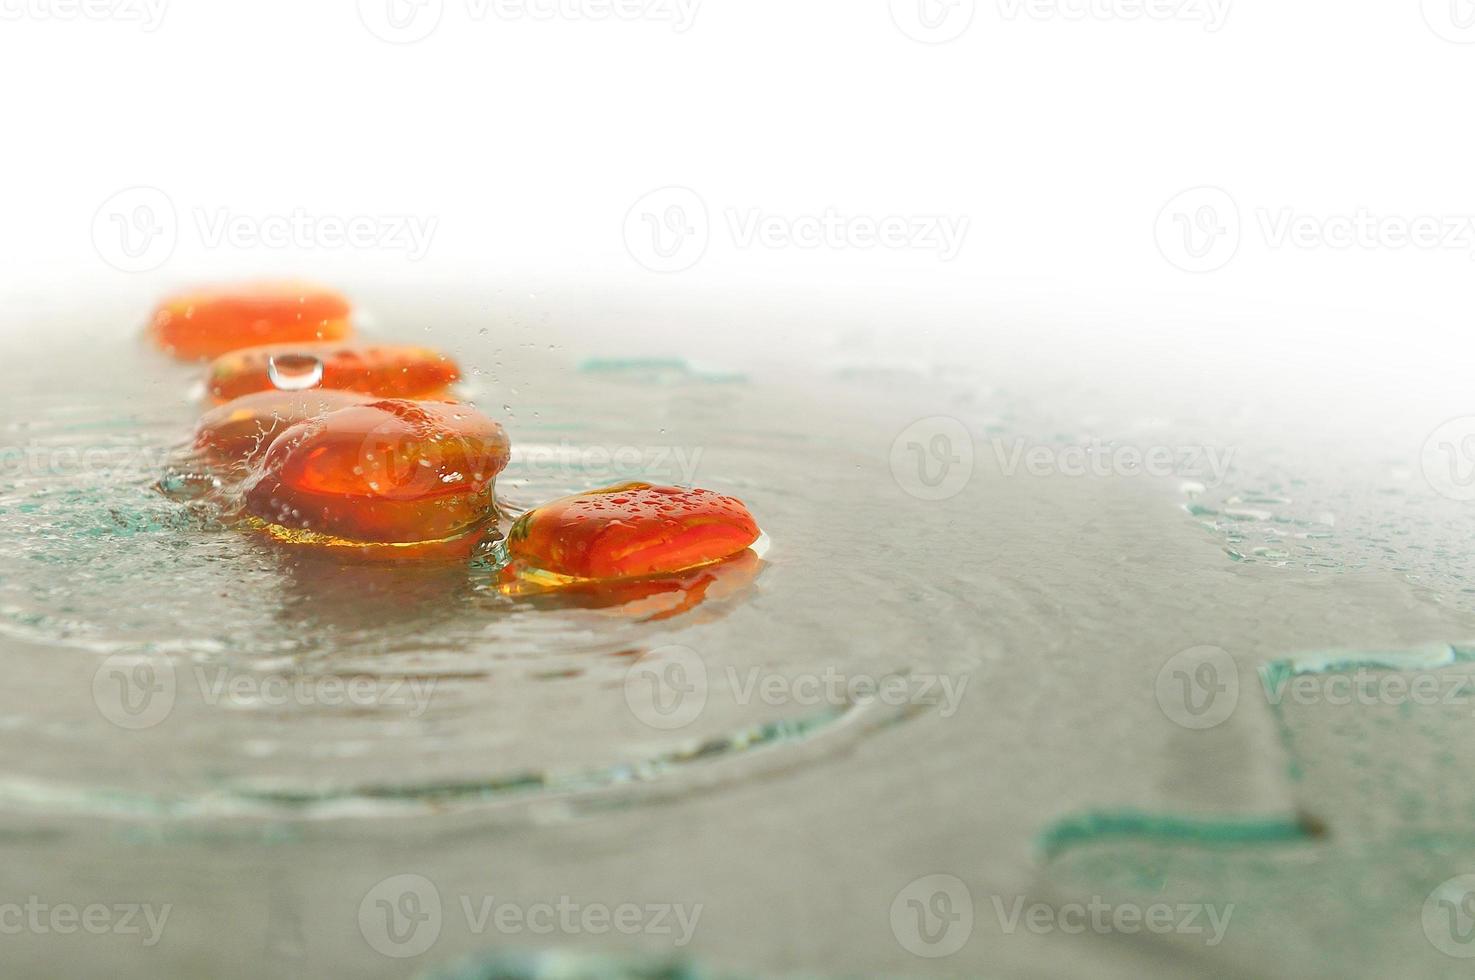 pedras zen molhadas isoladas com gotas de água espirrando foto